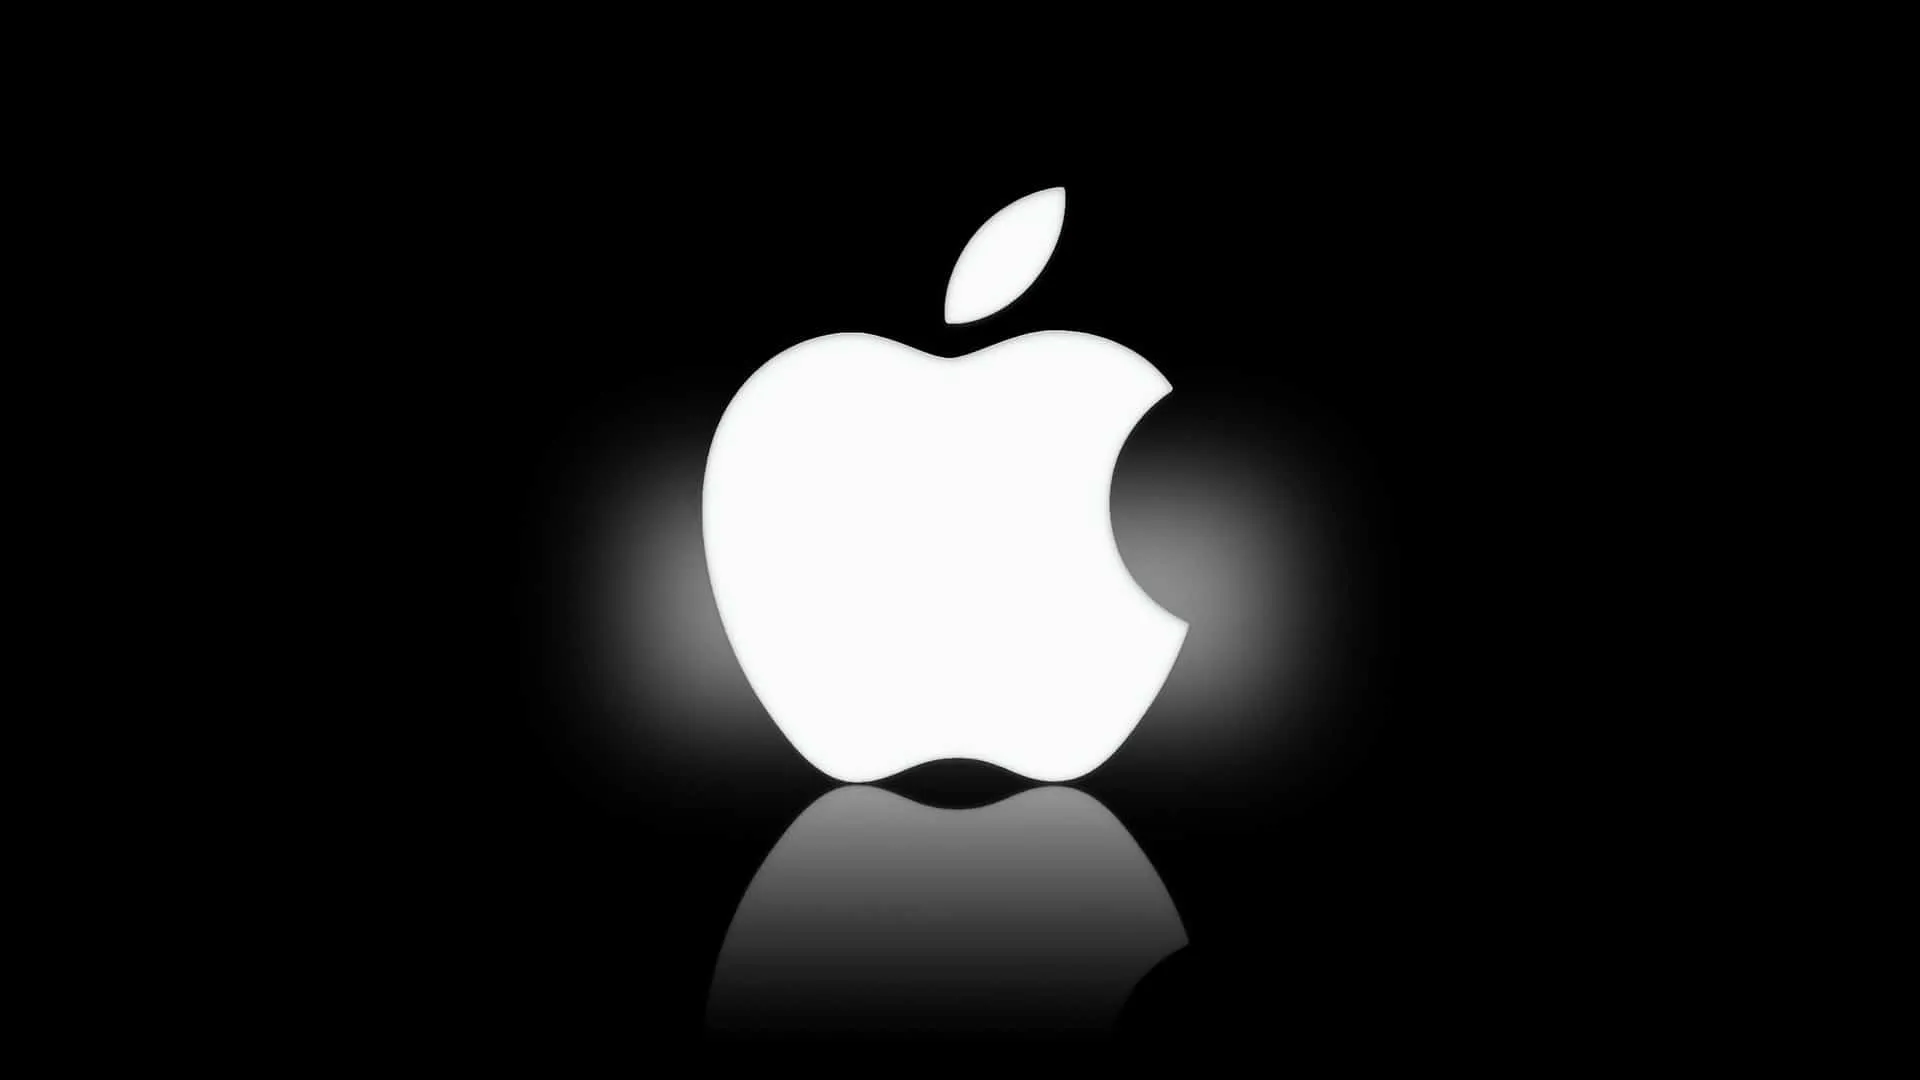 Apple, ritirato aggiornamento iOS 8: bug e problemi per gli utenti